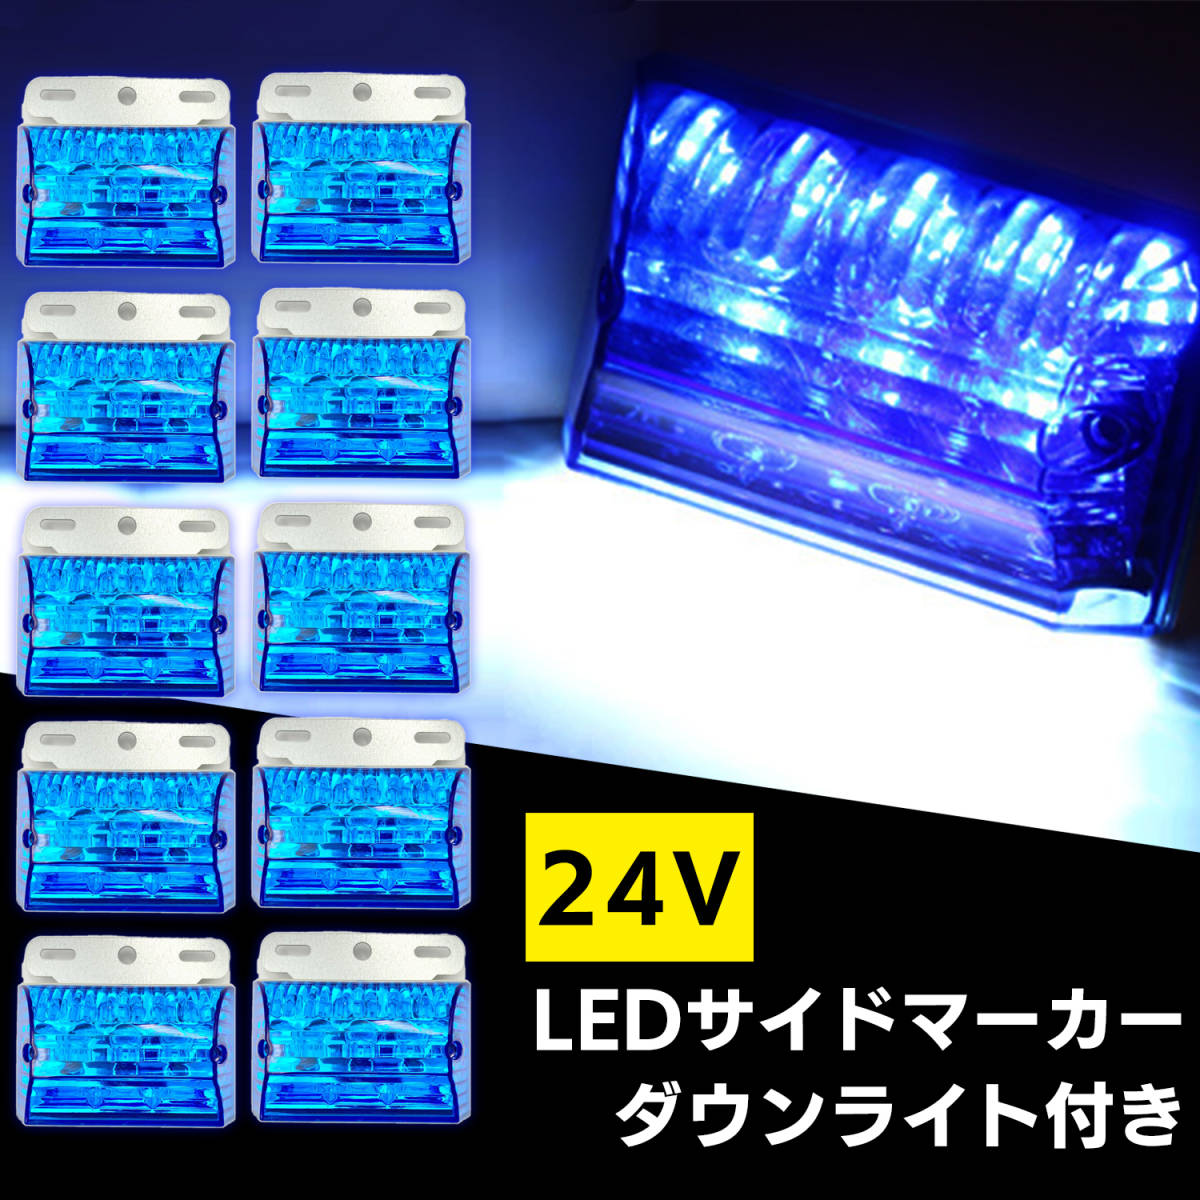 汎用 LED サイド マーカー 24V (ブルー 10個) トラック デコトラ ダウン ライト ランプ 路肩灯 アンダー ドレスアップ カスタム 角型の画像1